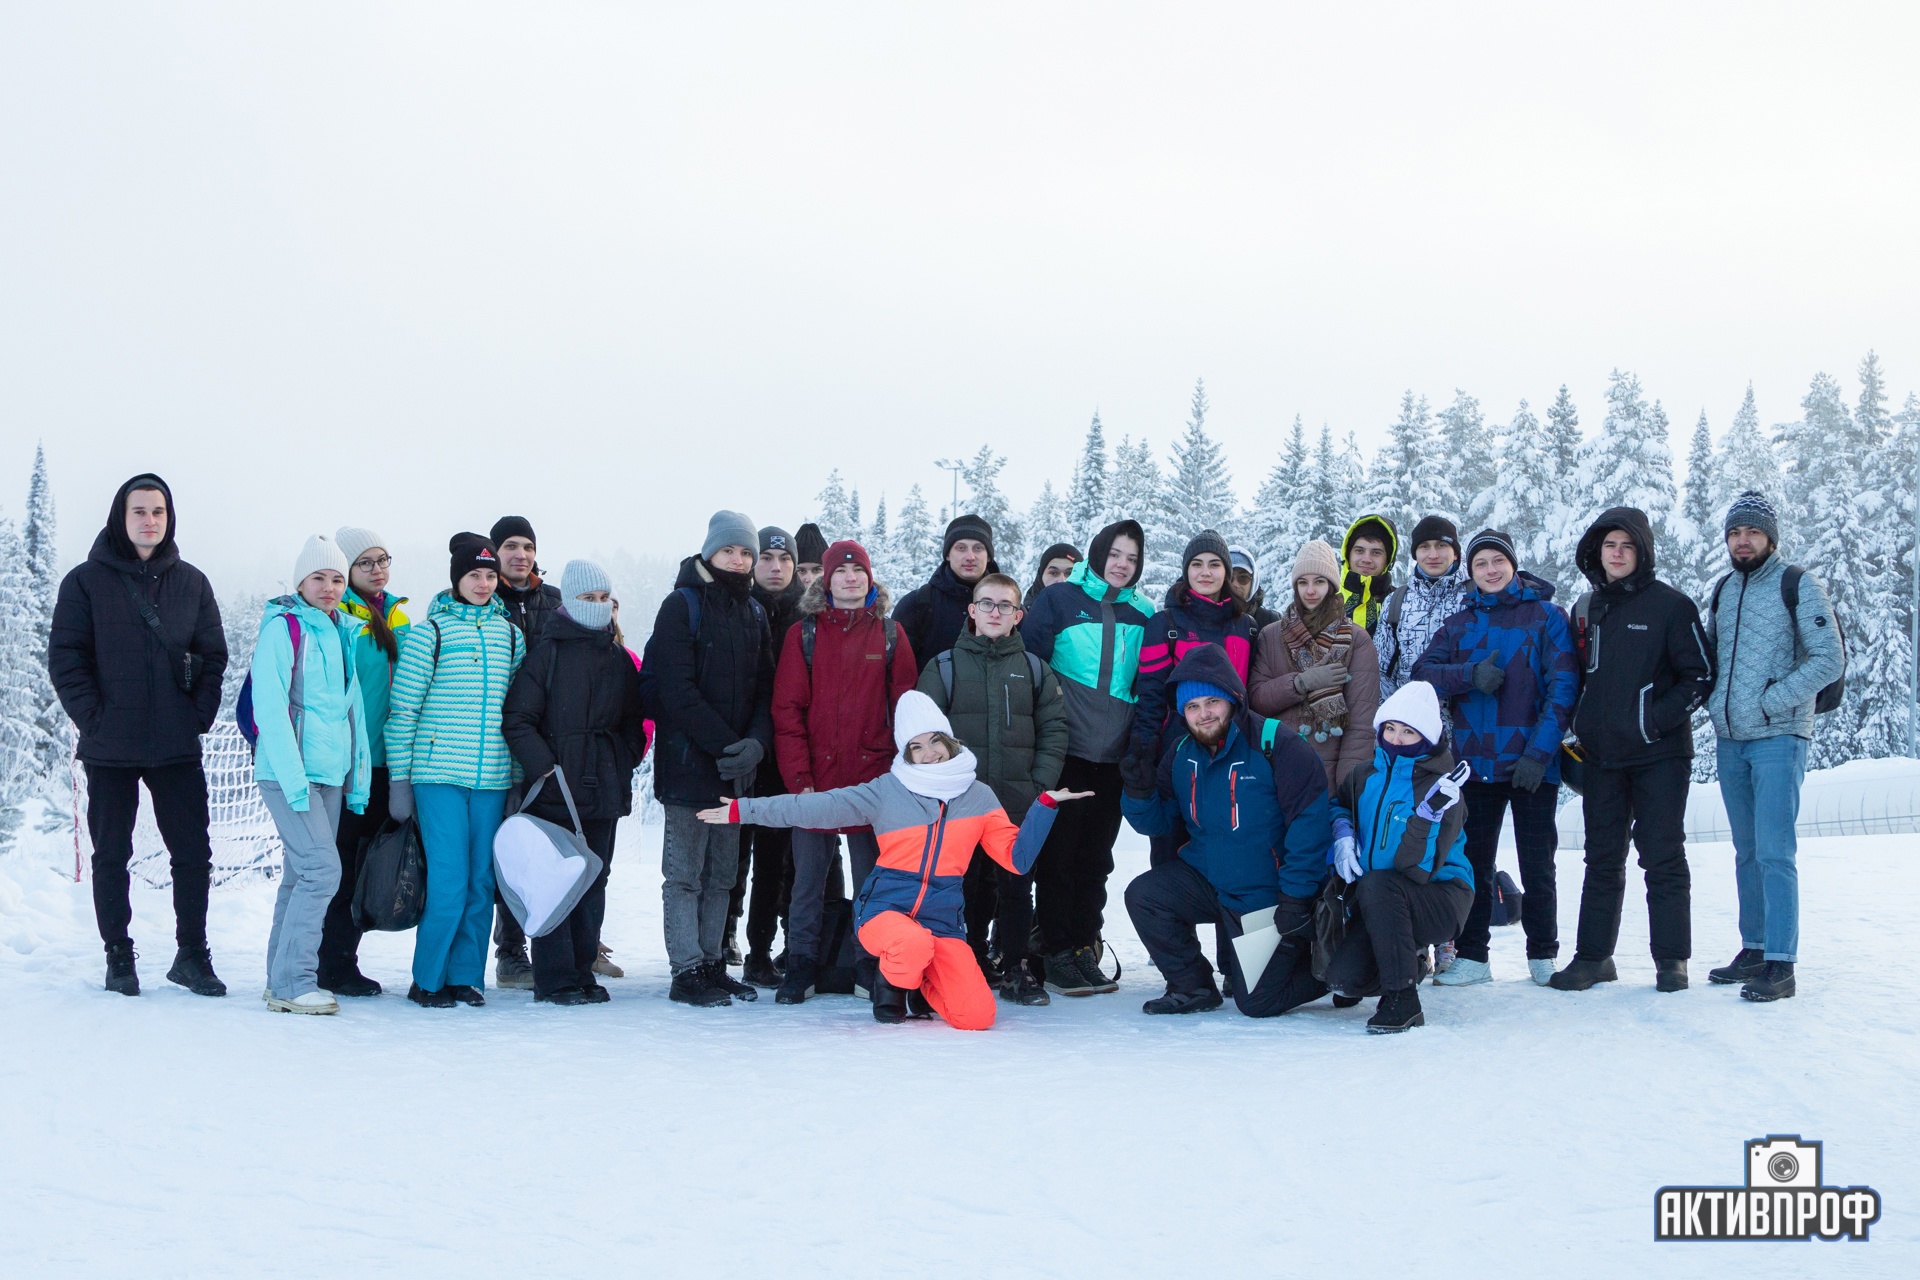 Покорение вершин гор! ,Нечкино,горнолыжный курорт, студенты-активисты, сноуборд, лыжи